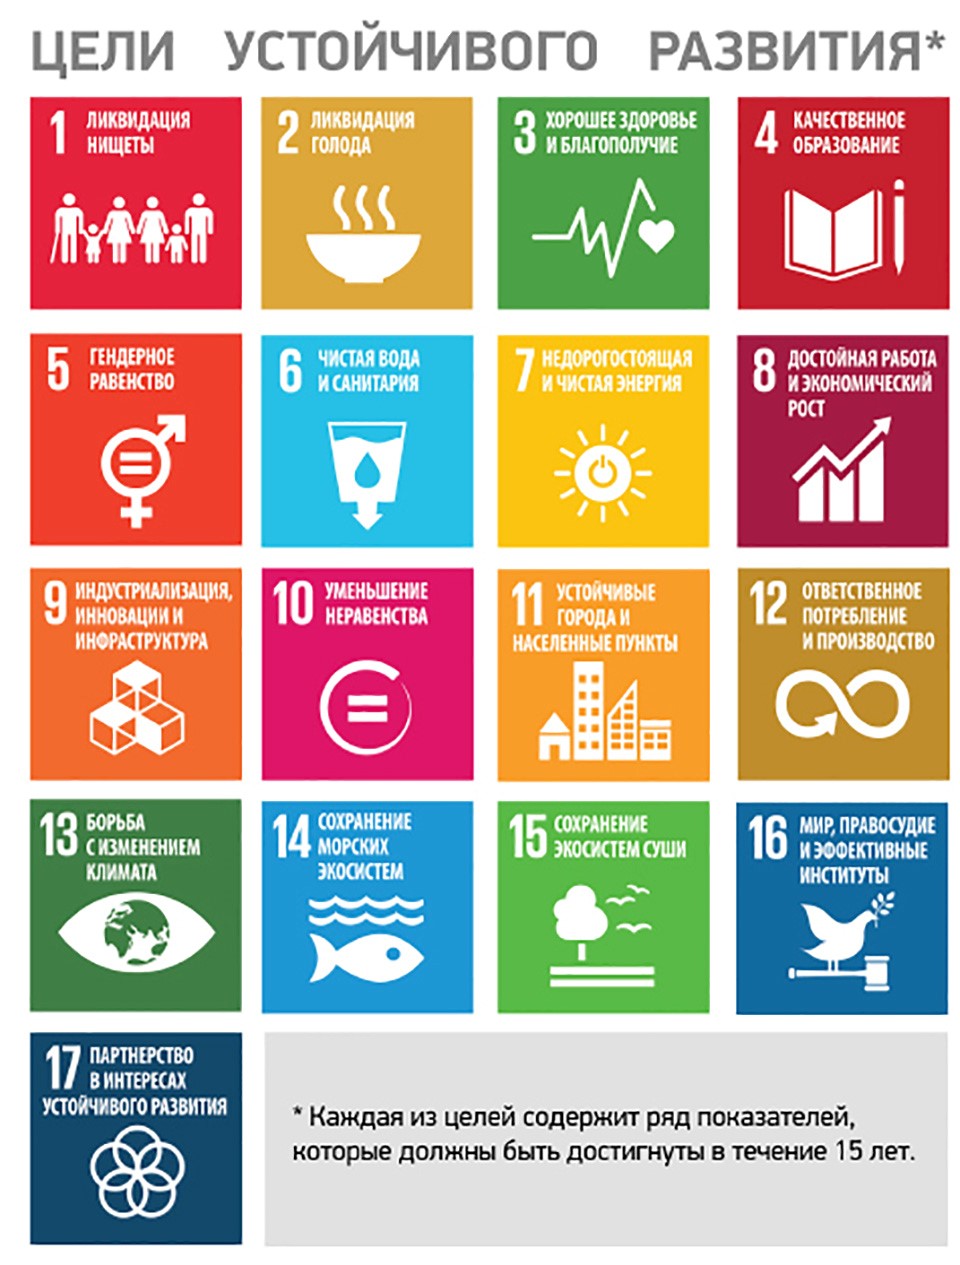 Определи цель устойчивого развития. 17 Целей ООН В области устойчивого развития. 17 Целей устойчивого развития ООН до 2030 года. Цели устойчивого развития (ЦУР) ООН. Цели устойчивого развития ООН 2015-2030.